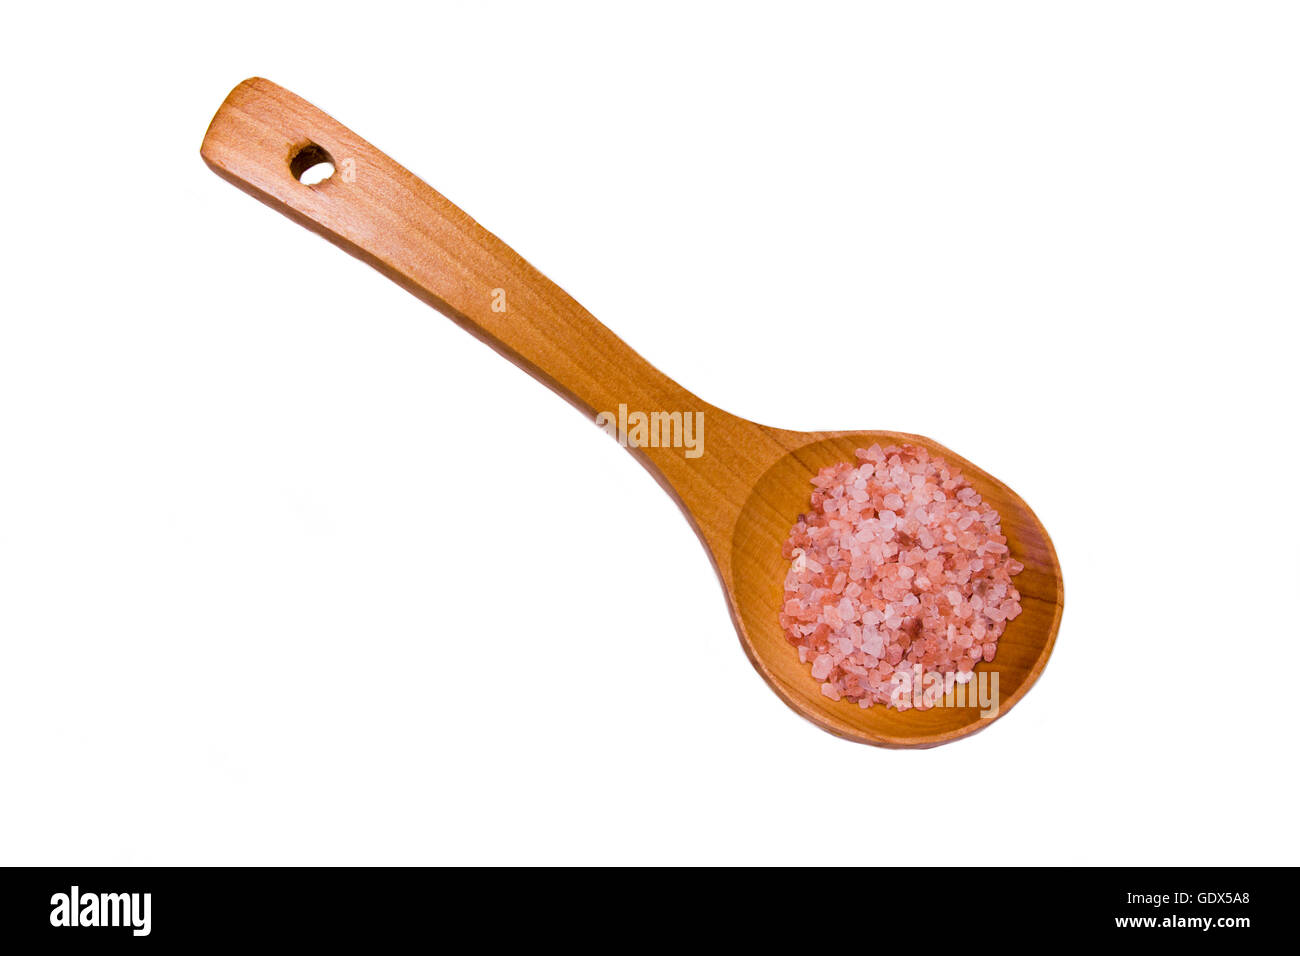 Il cucchiaio di legno di rosa Sale Himalayano su uno sfondo bianco visto da sopra Foto Stock